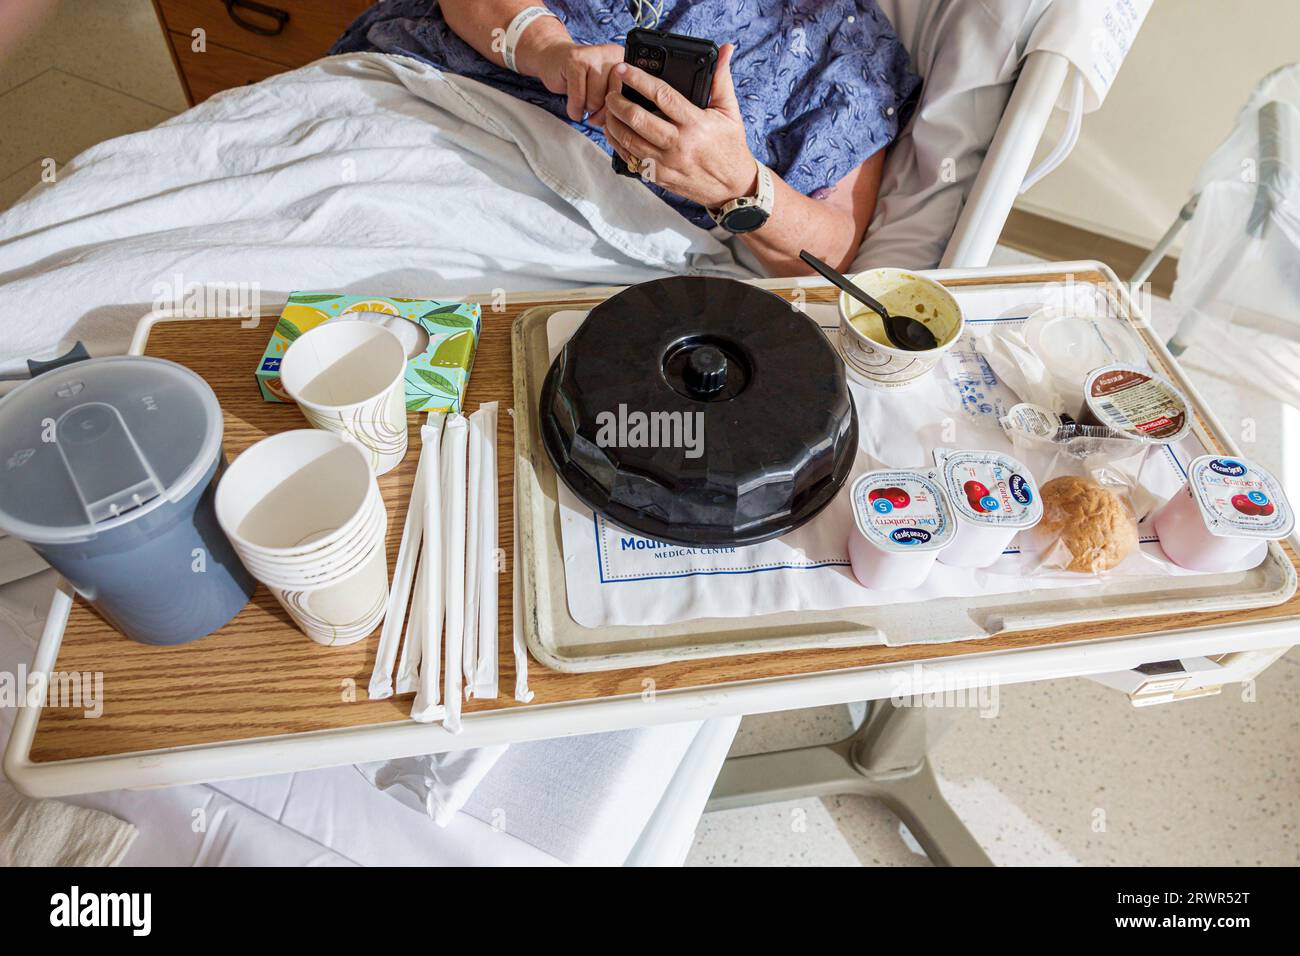 Miami Beach Floride, chambre de patient d'hôpital, table de lit repas repas repas, femme femme femme femme femme, adulte, en utilisant le téléphone portable smartphone, hispanique Banque D'Images